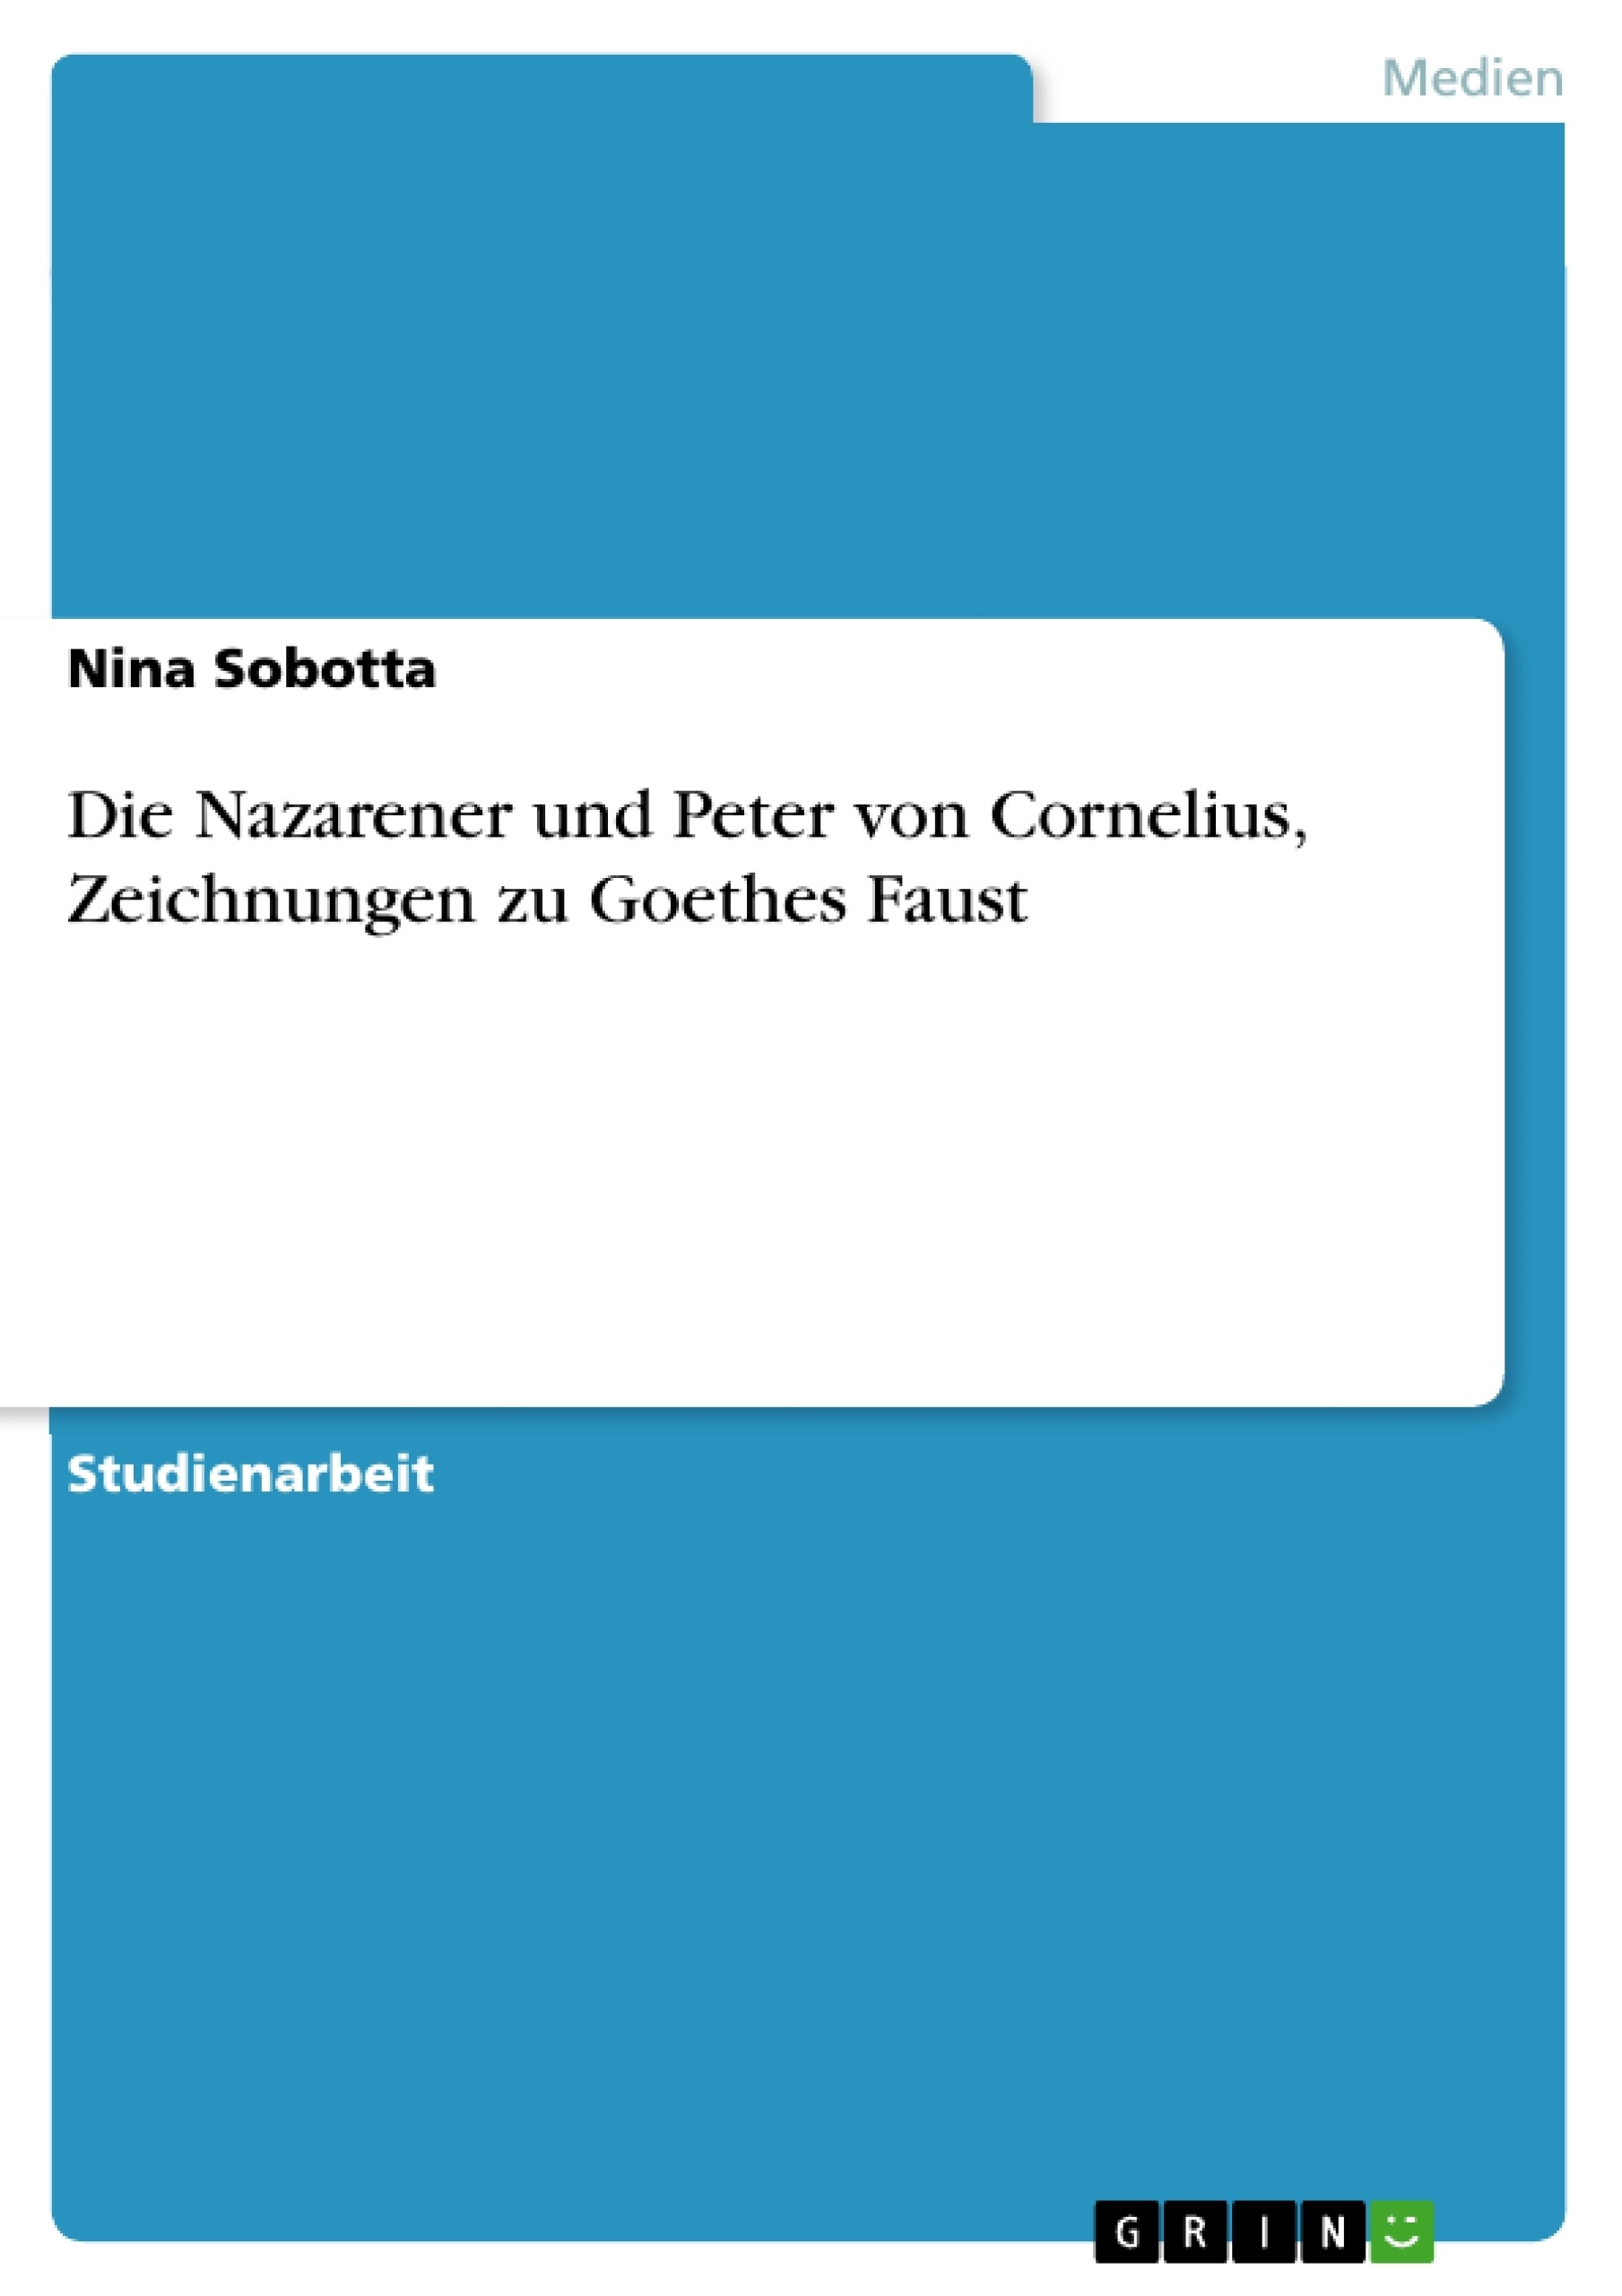 Title: Die Nazarener und Peter von Cornelius, Zeichnungen zu Goethes Faust